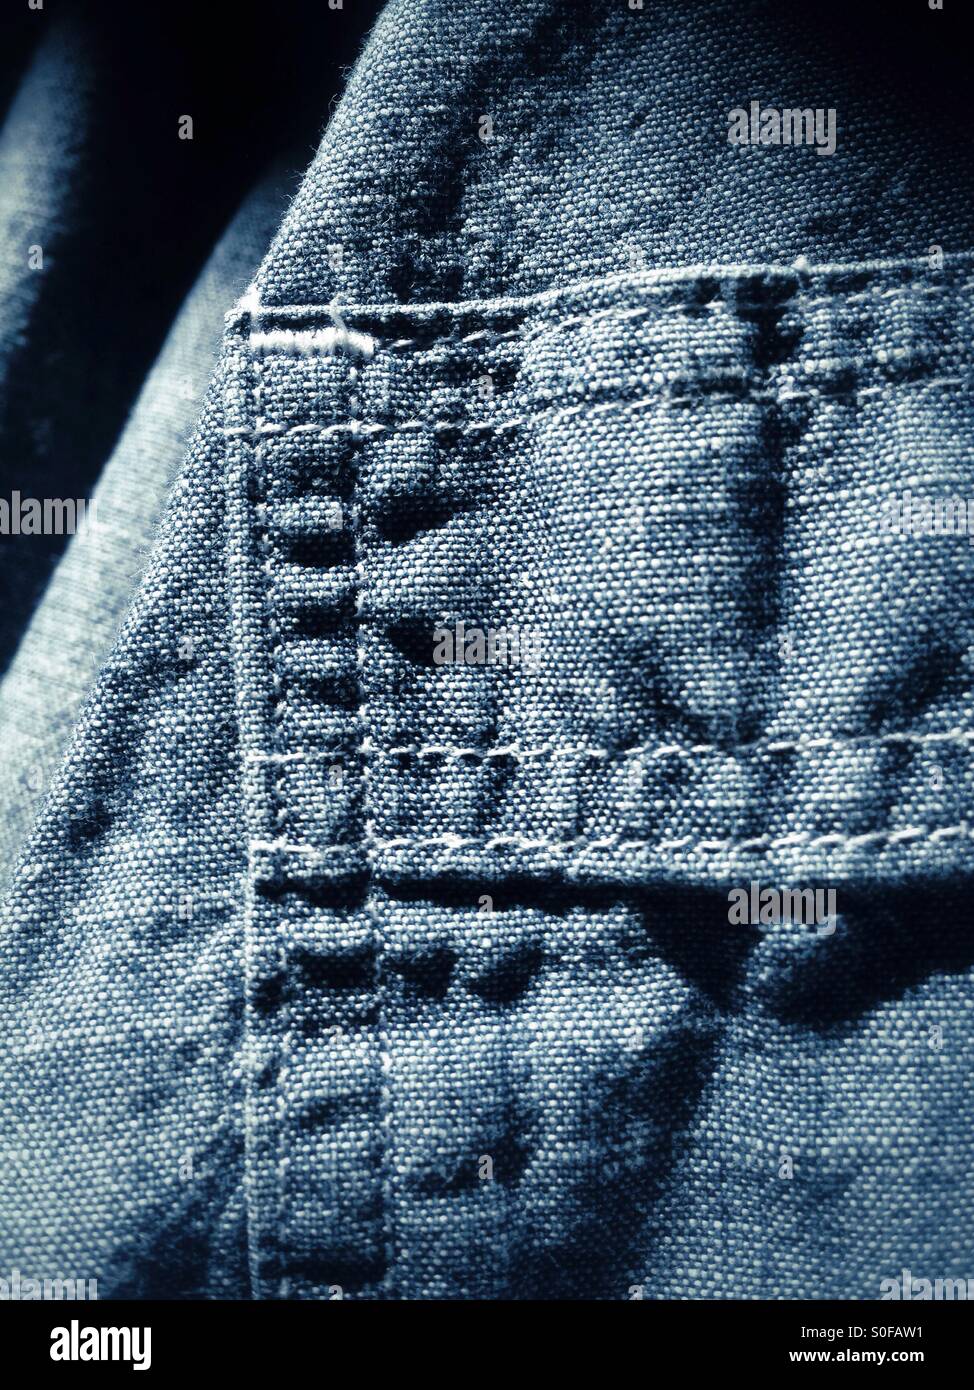 Dettaglio di un paio di jeans nella tasca della camicia Foto Stock